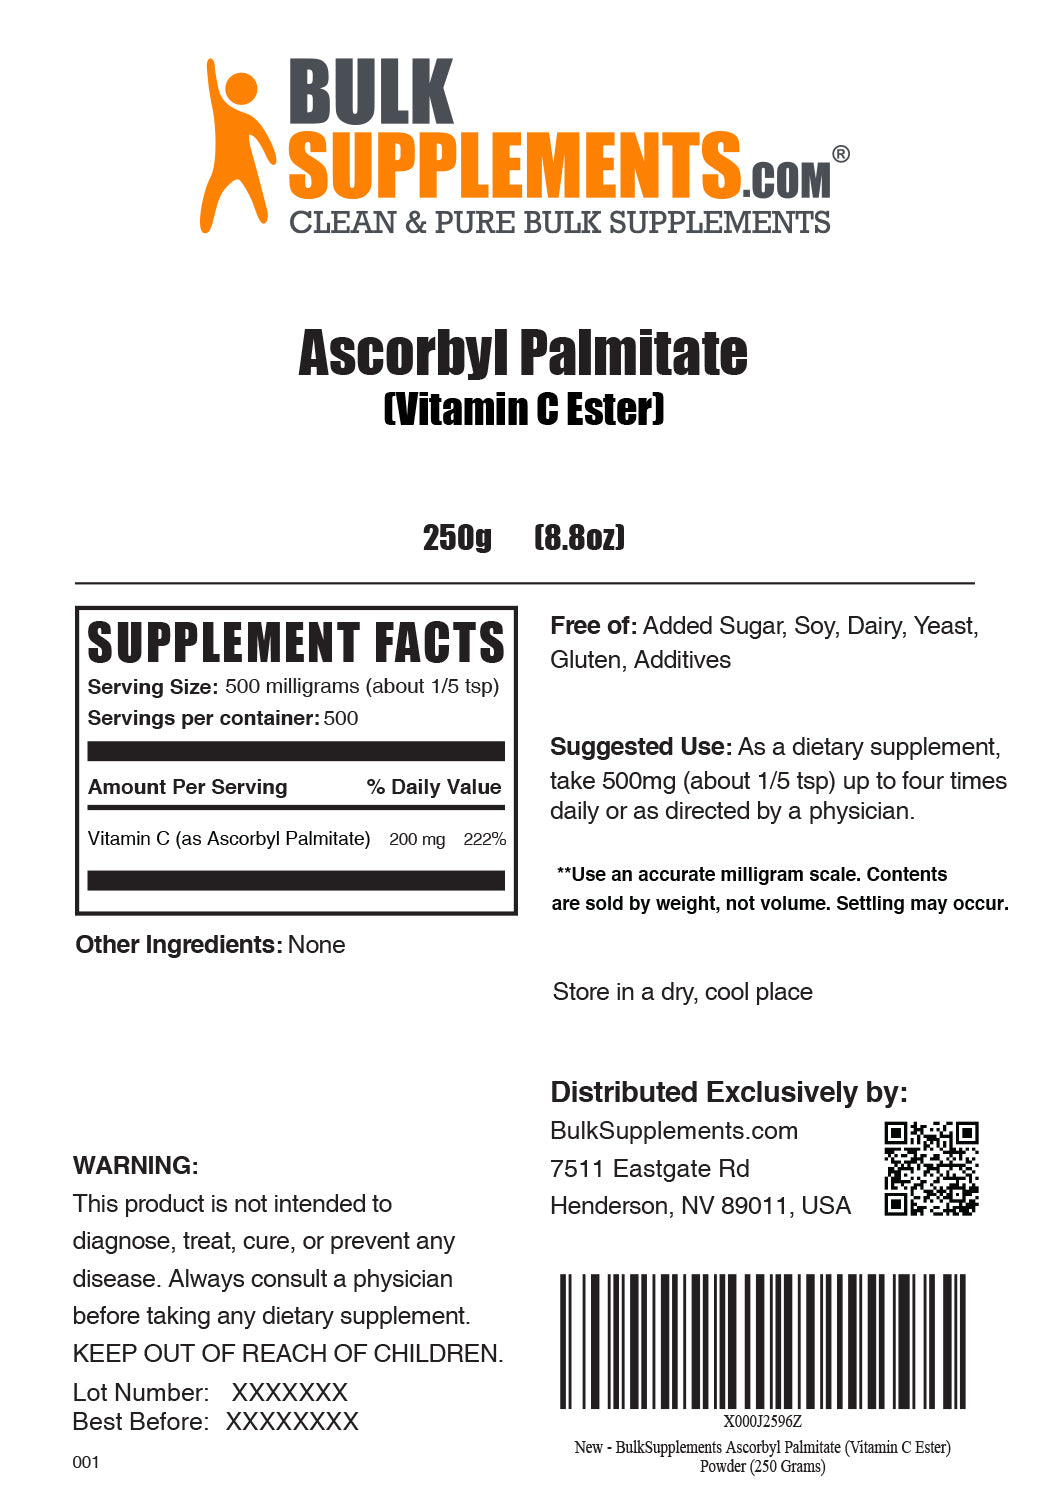 Palmitato de ascorbilo (éster de vitamina C) en polvo